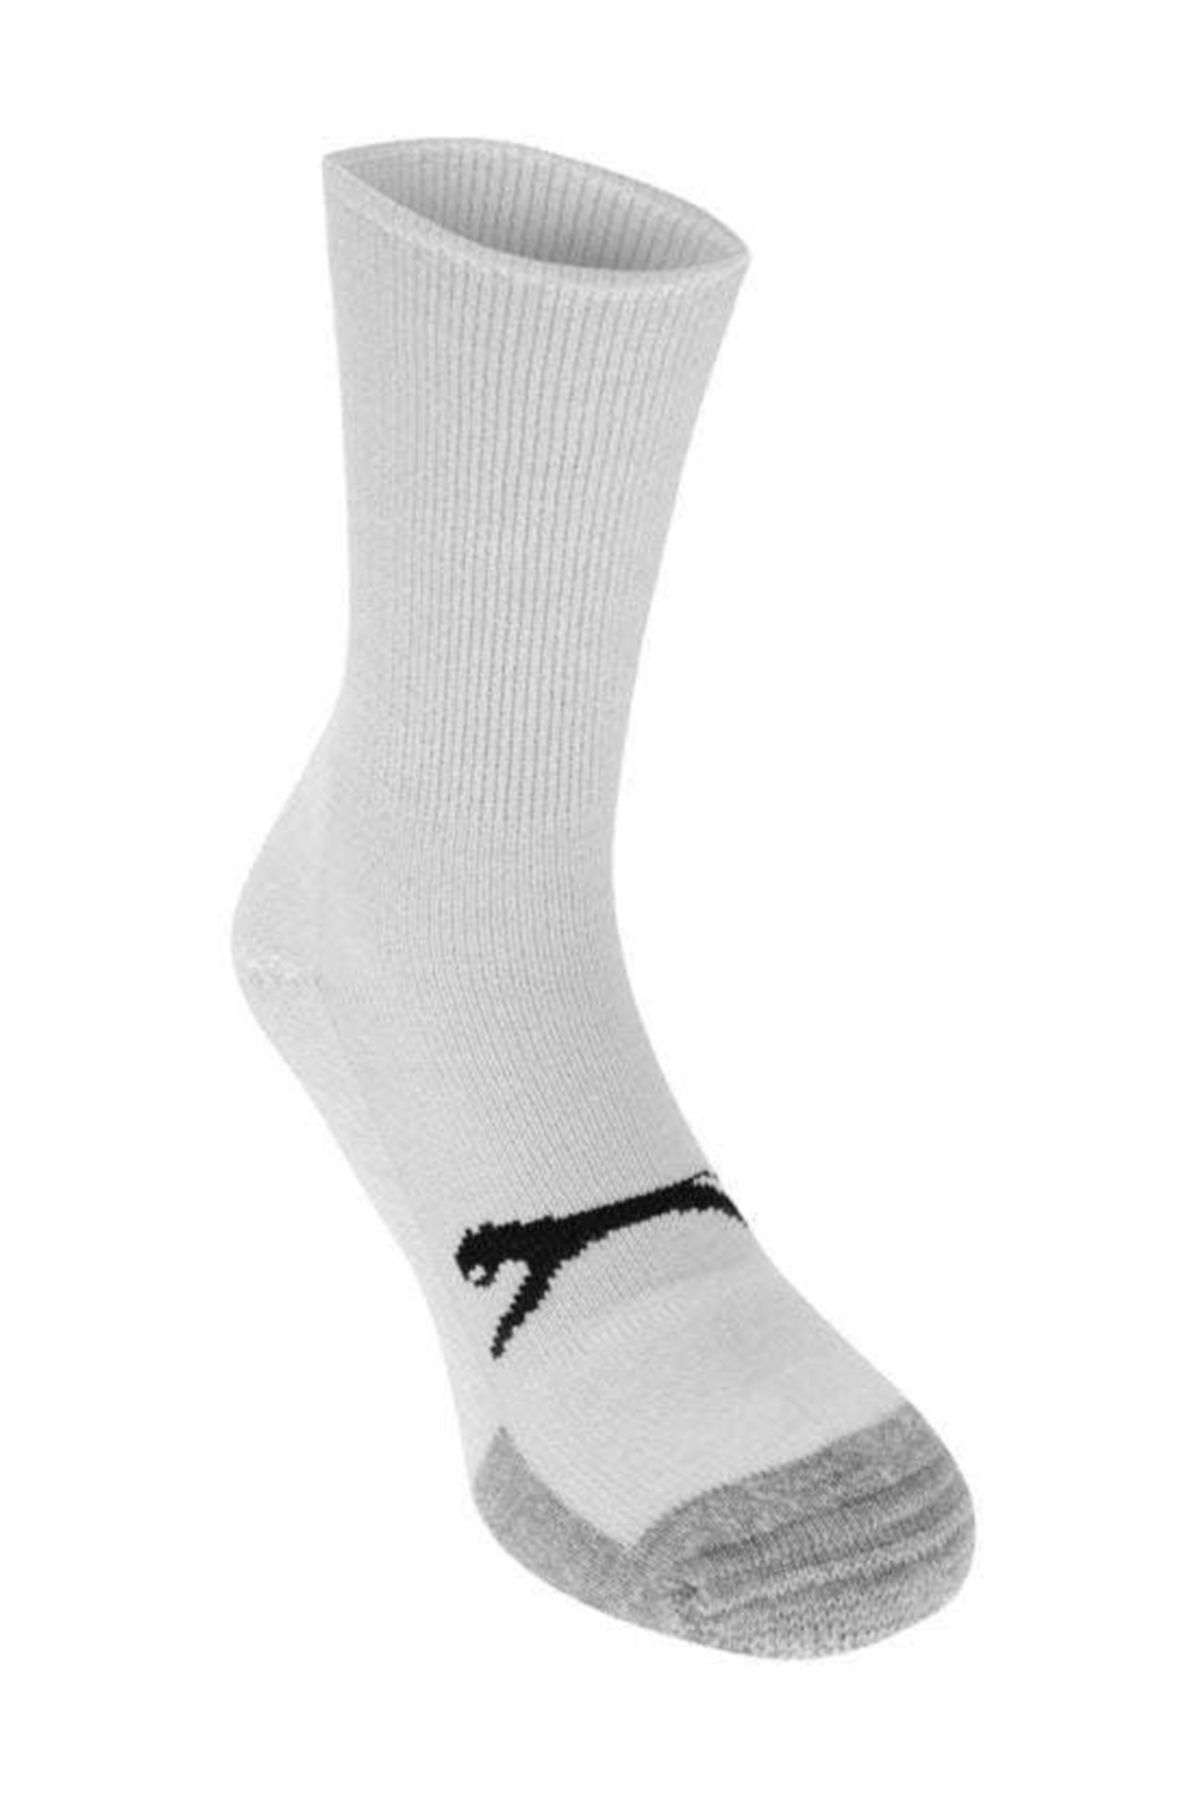 Slazenger Cushion Pro Tennis Sock Unisex Beyaz Tenis Çorabı 2 Li